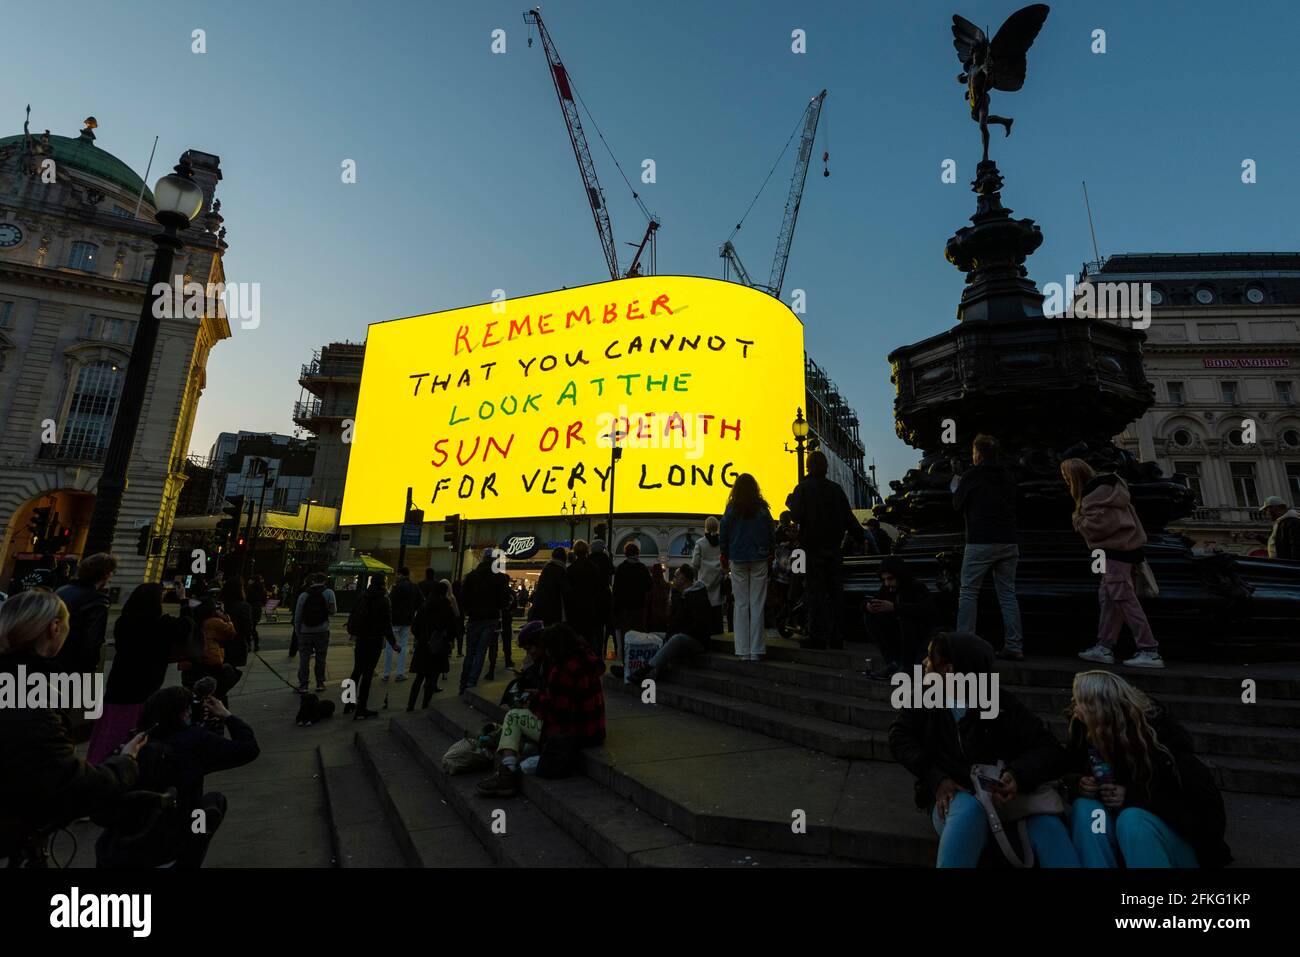 Londra, Regno Unito. 1 maggio 2021. L'opera di David Hockney "Remember You Can Look at the Sun or Death for Very Long", che mostra un'alba animata, viene visualizzata sugli schermi giganti di Piccadilly Circus. Verrà inoltre visualizzato su schermi in altre città del mondo. Il lavoro, creato su un iPad, dovrebbe offrire un simbolo di speranza mentre il mondo si risveglia dal suo lungo blocco e coincide anche con la sua prossima mostra "l'arrivo della primavera" alla Royal Academy. A Londra, l'opera è in mostra ogni sera per il mese di maggio. Credit: Stephen Chung / Alamy Live News Foto Stock